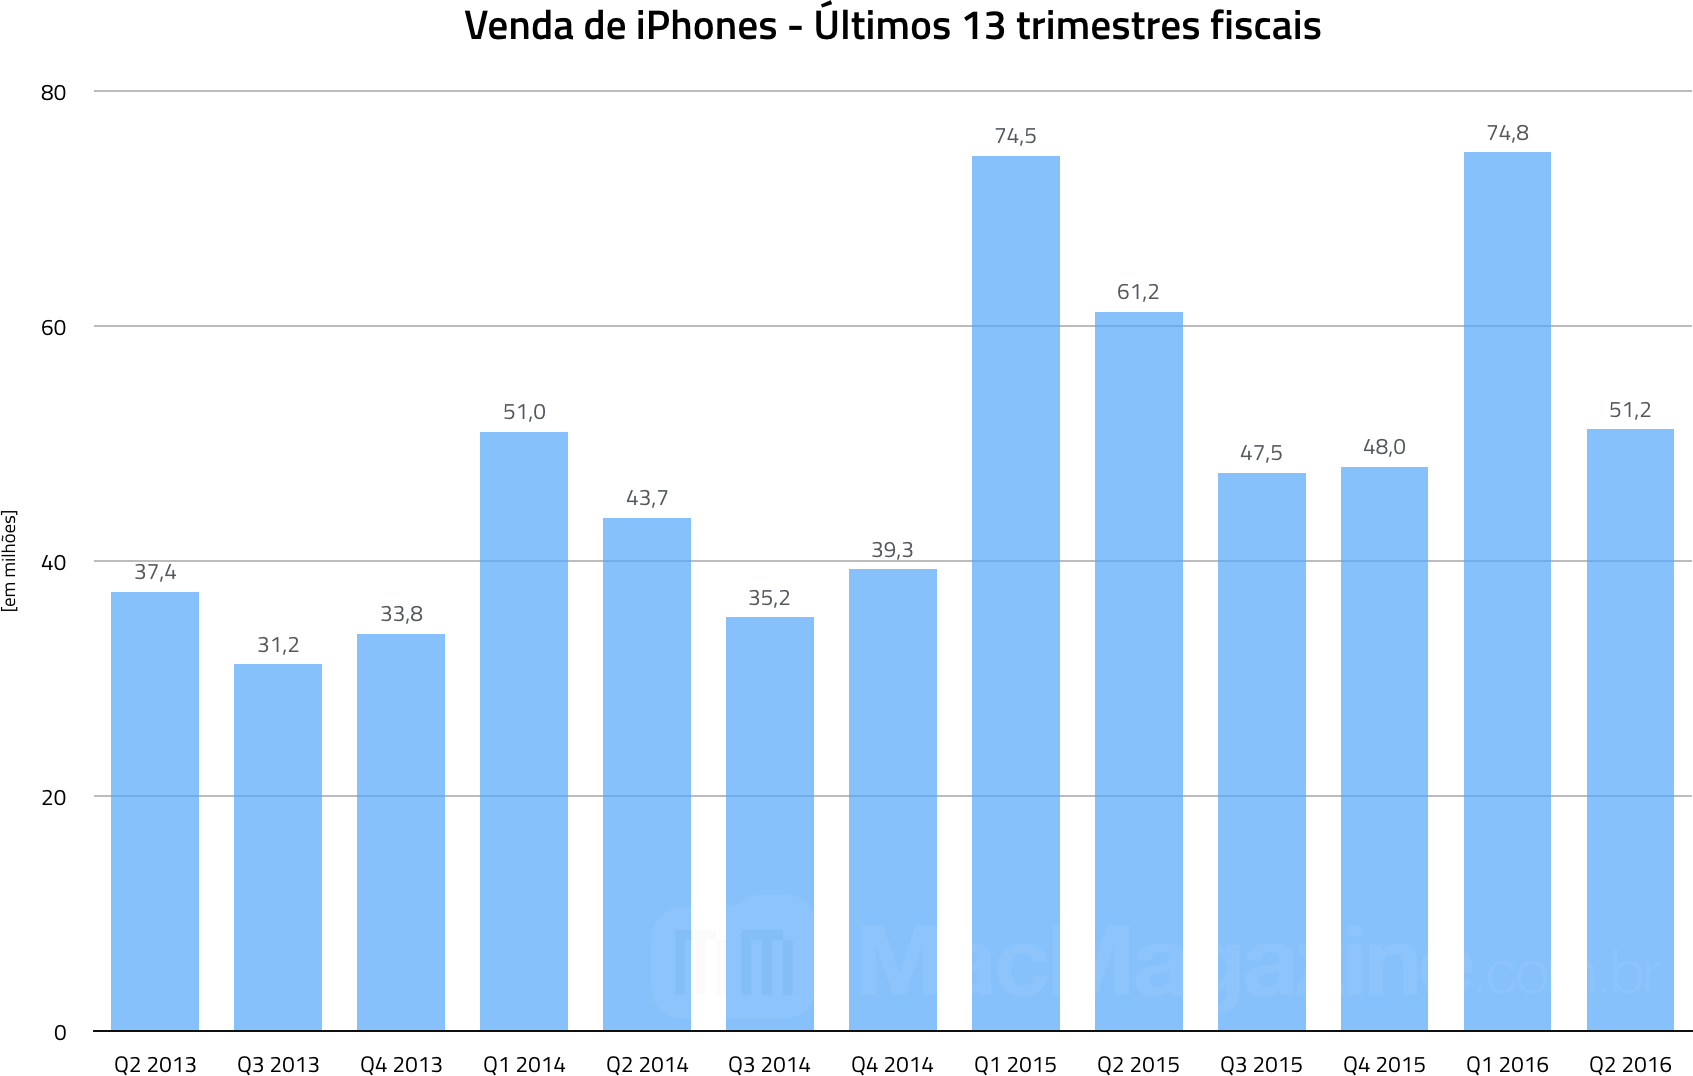 Gráfico com as vendas de iPhones - Segundo trimestre fiscal de 2016 da Apple